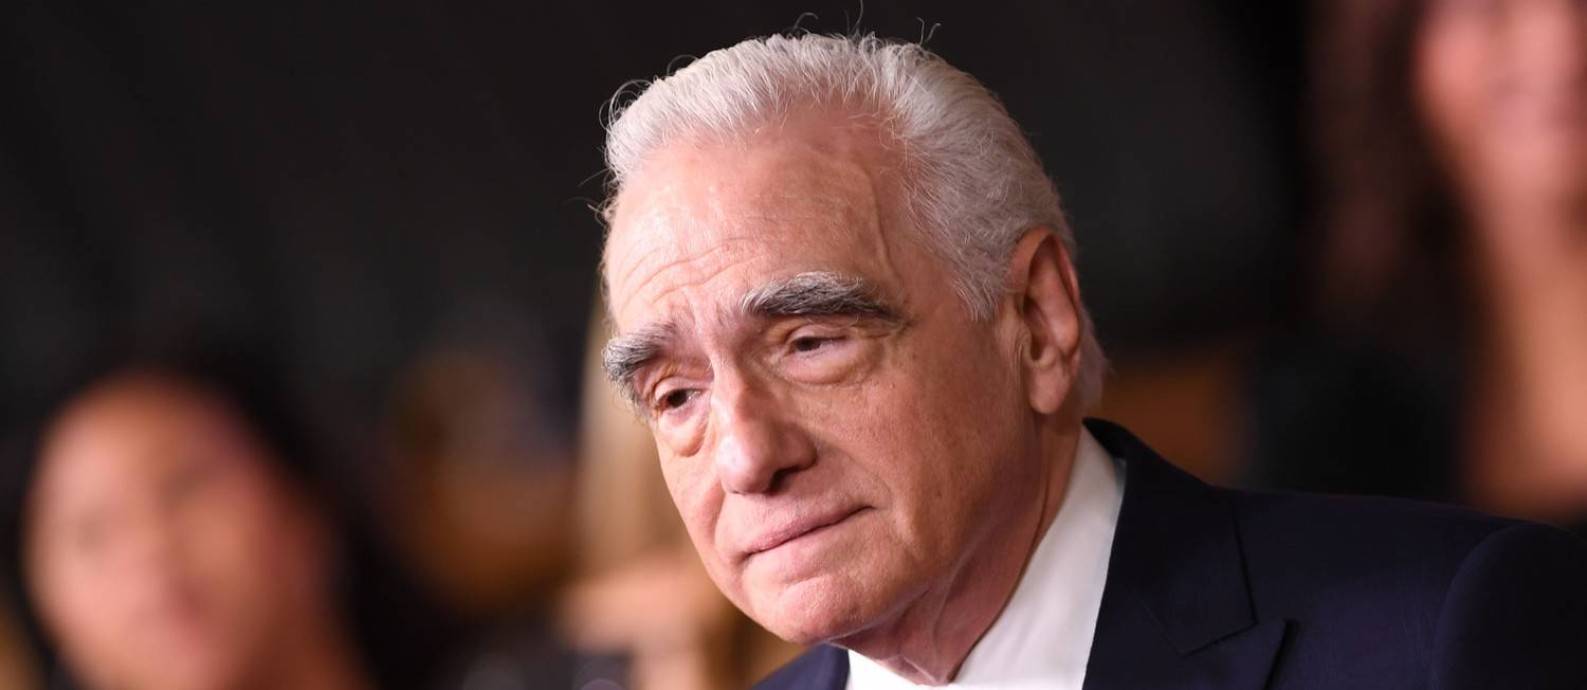 Apple irá produzir o novo filme de Martin Scorsese